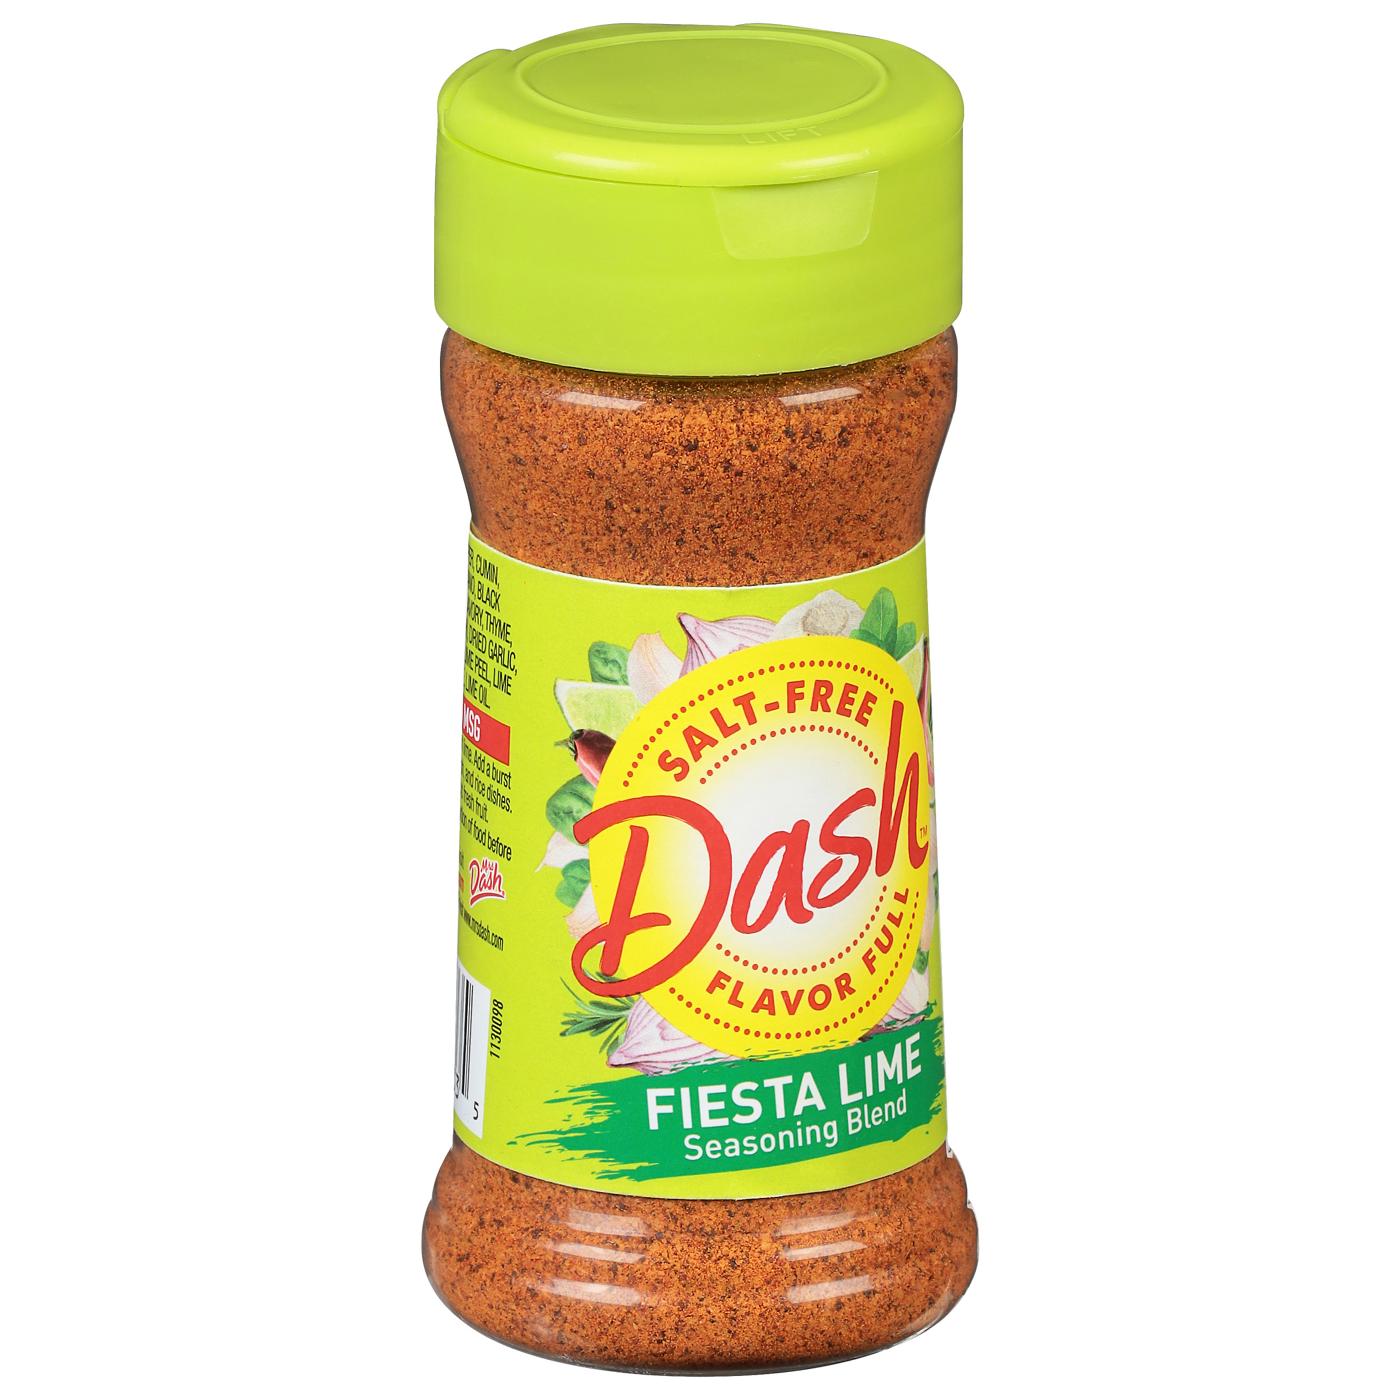 Mrs. Dash Salt-Free Fiesta Lime Seasoning Blend